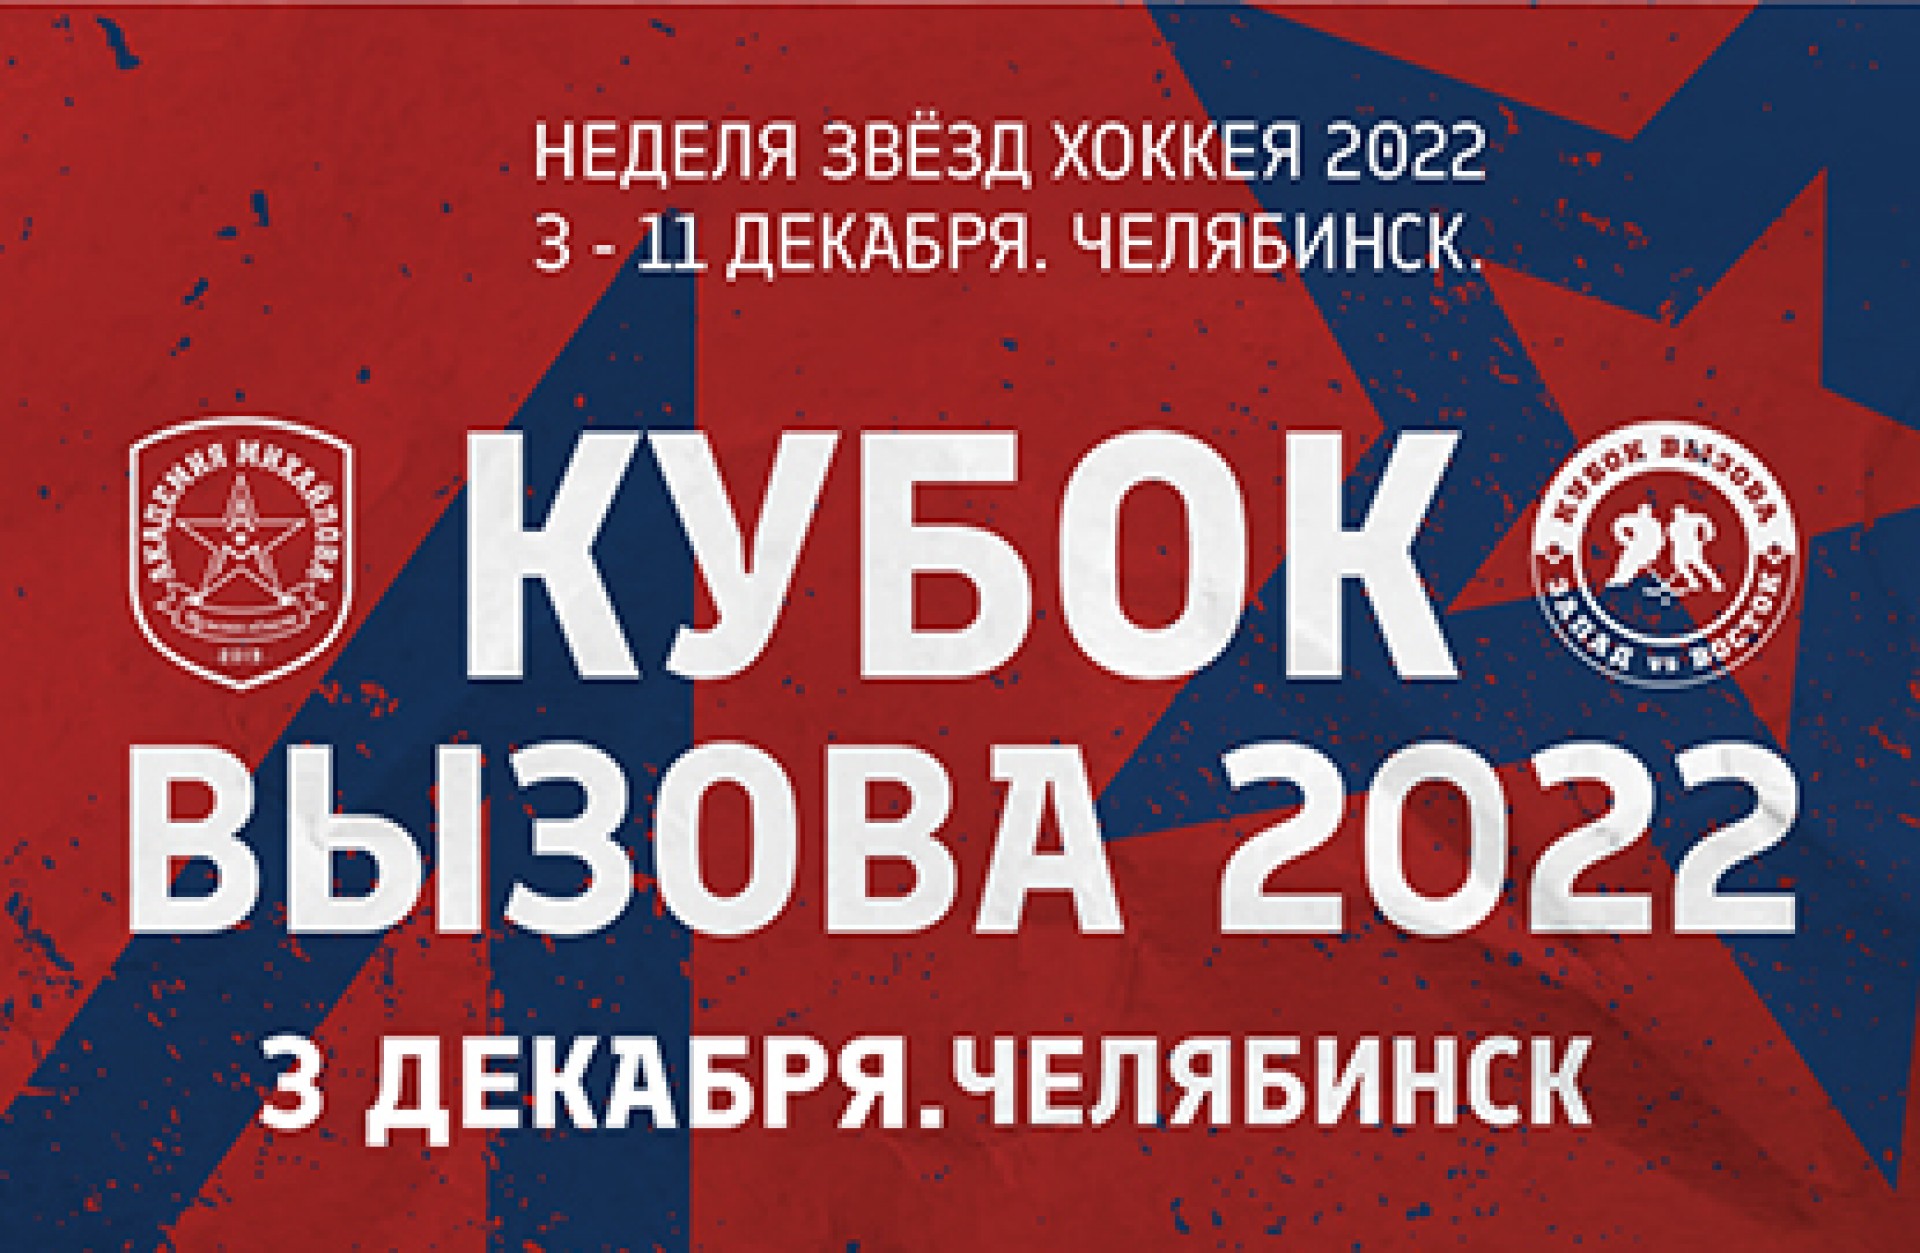 Кубок Вызова пройдет в Челябинске 3 декабря